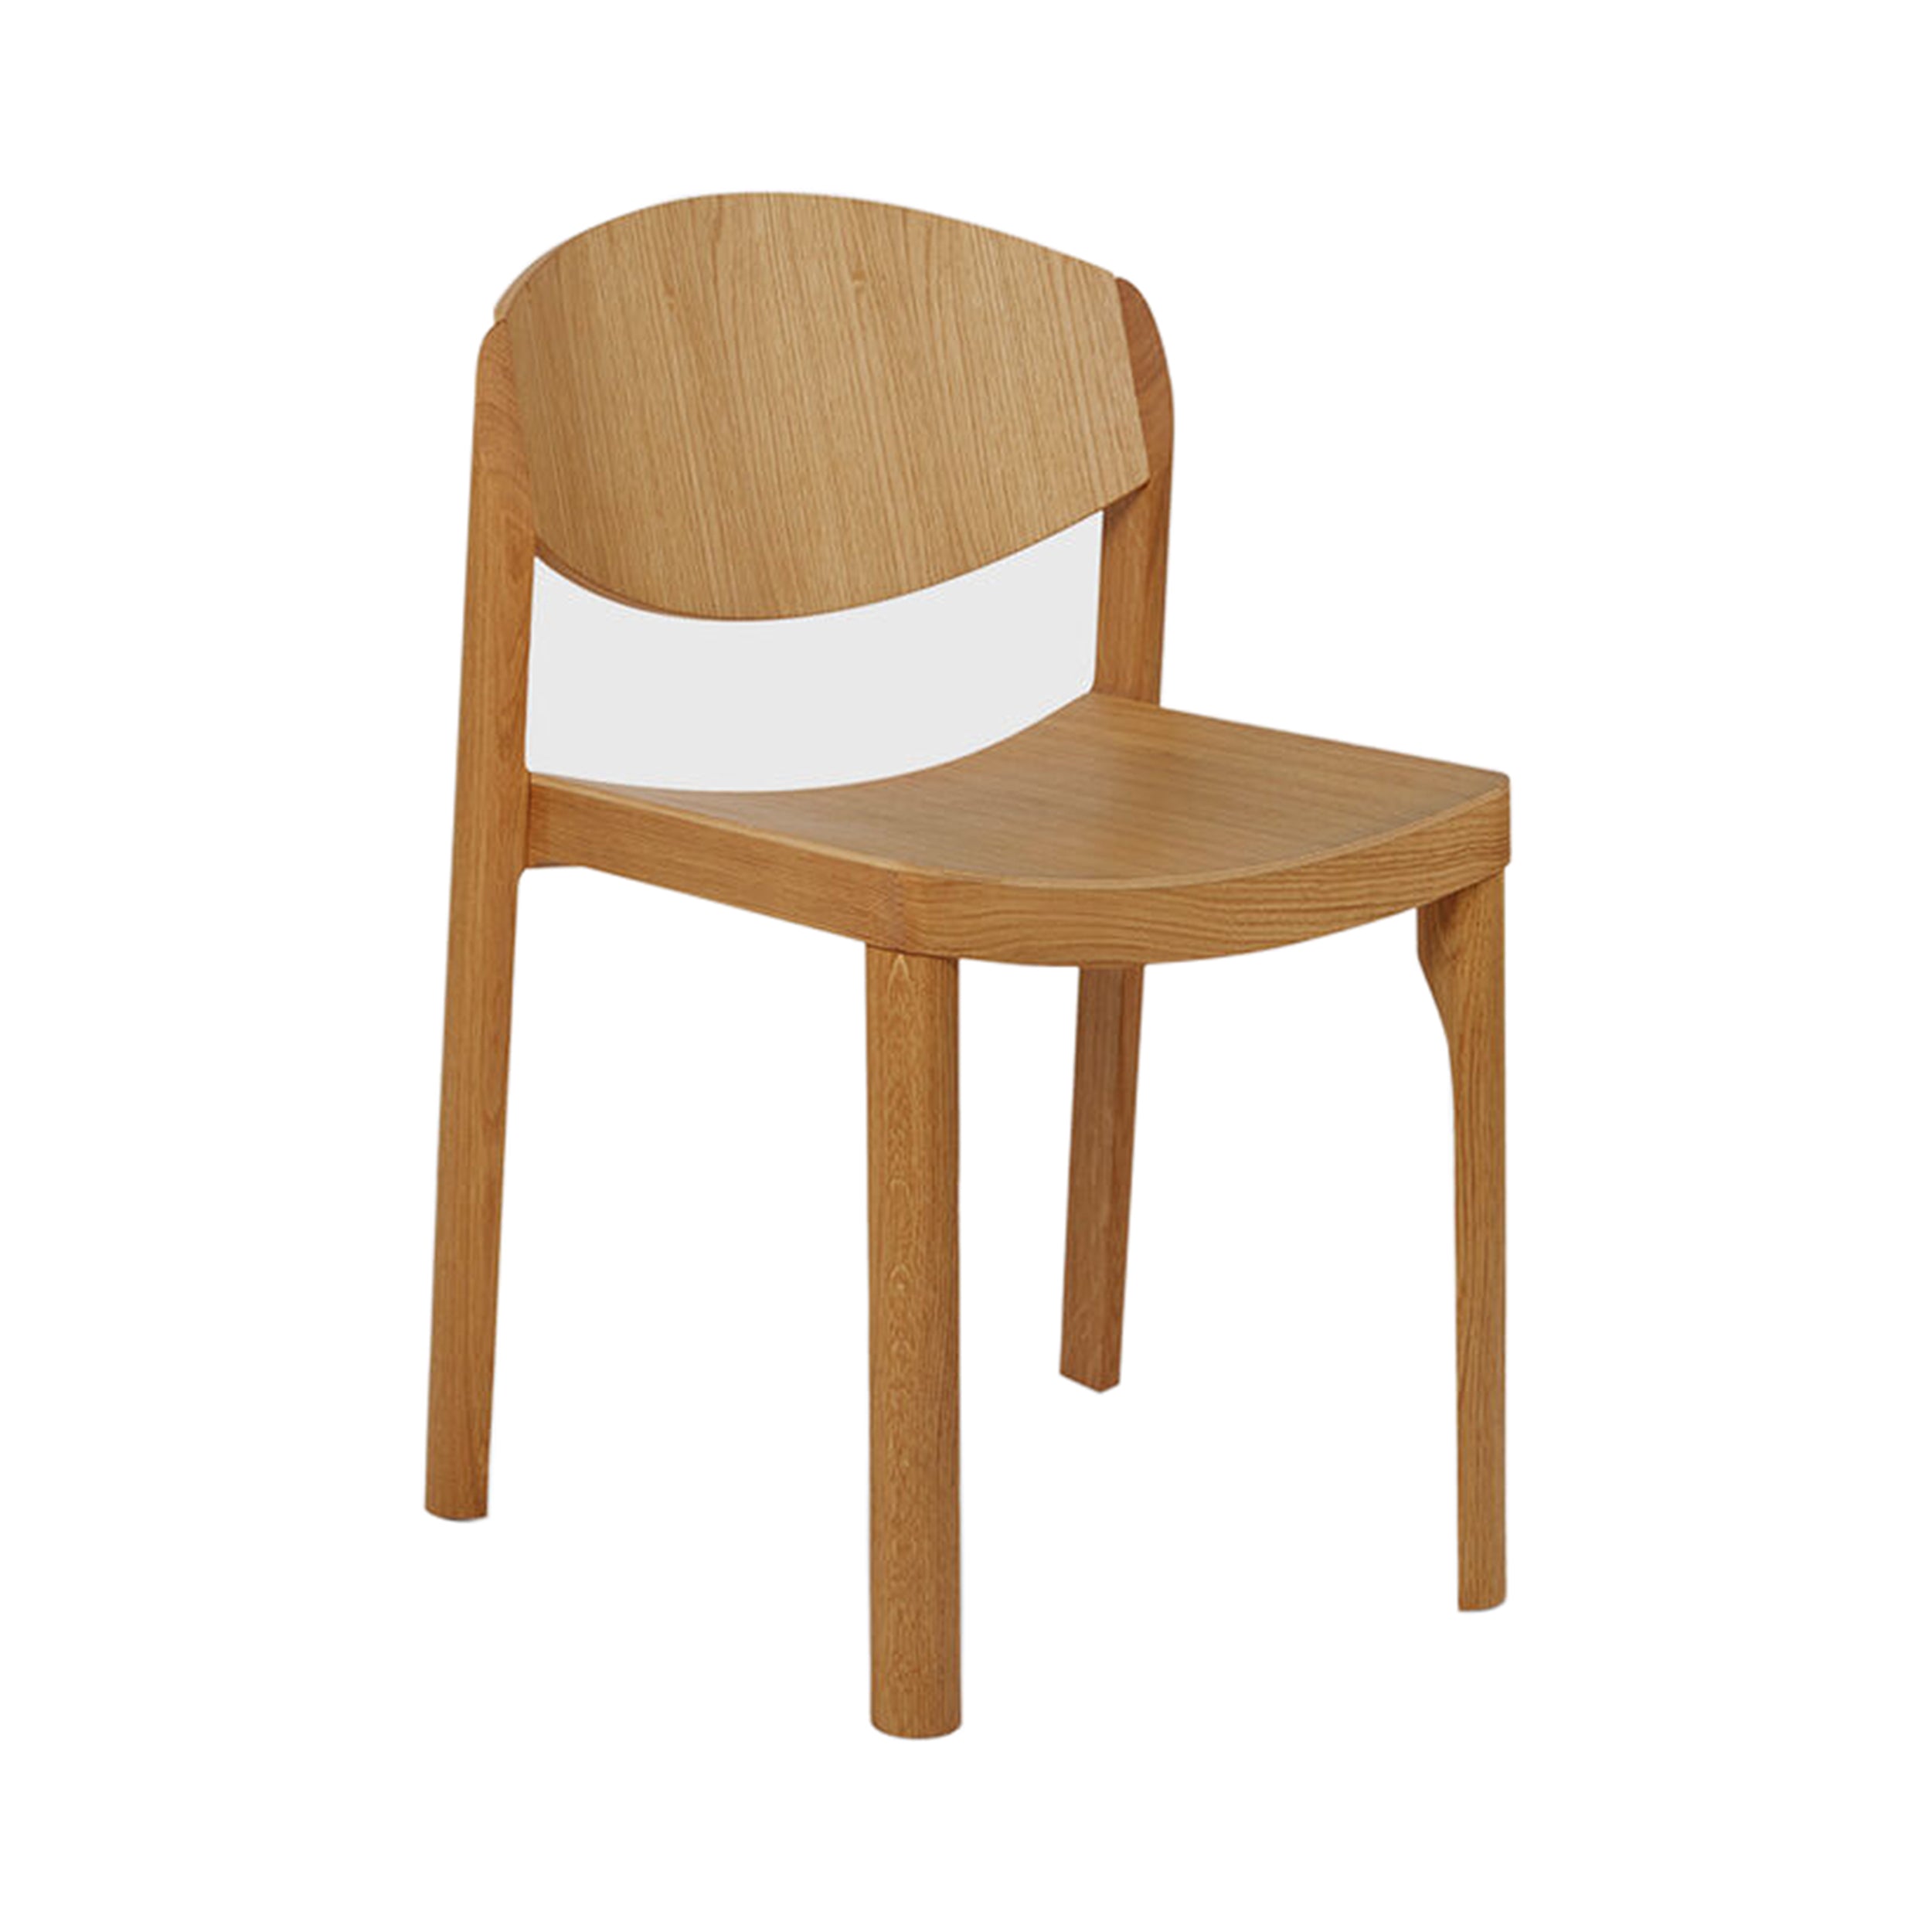 Mauro Chair: 1 + Oiled Oak